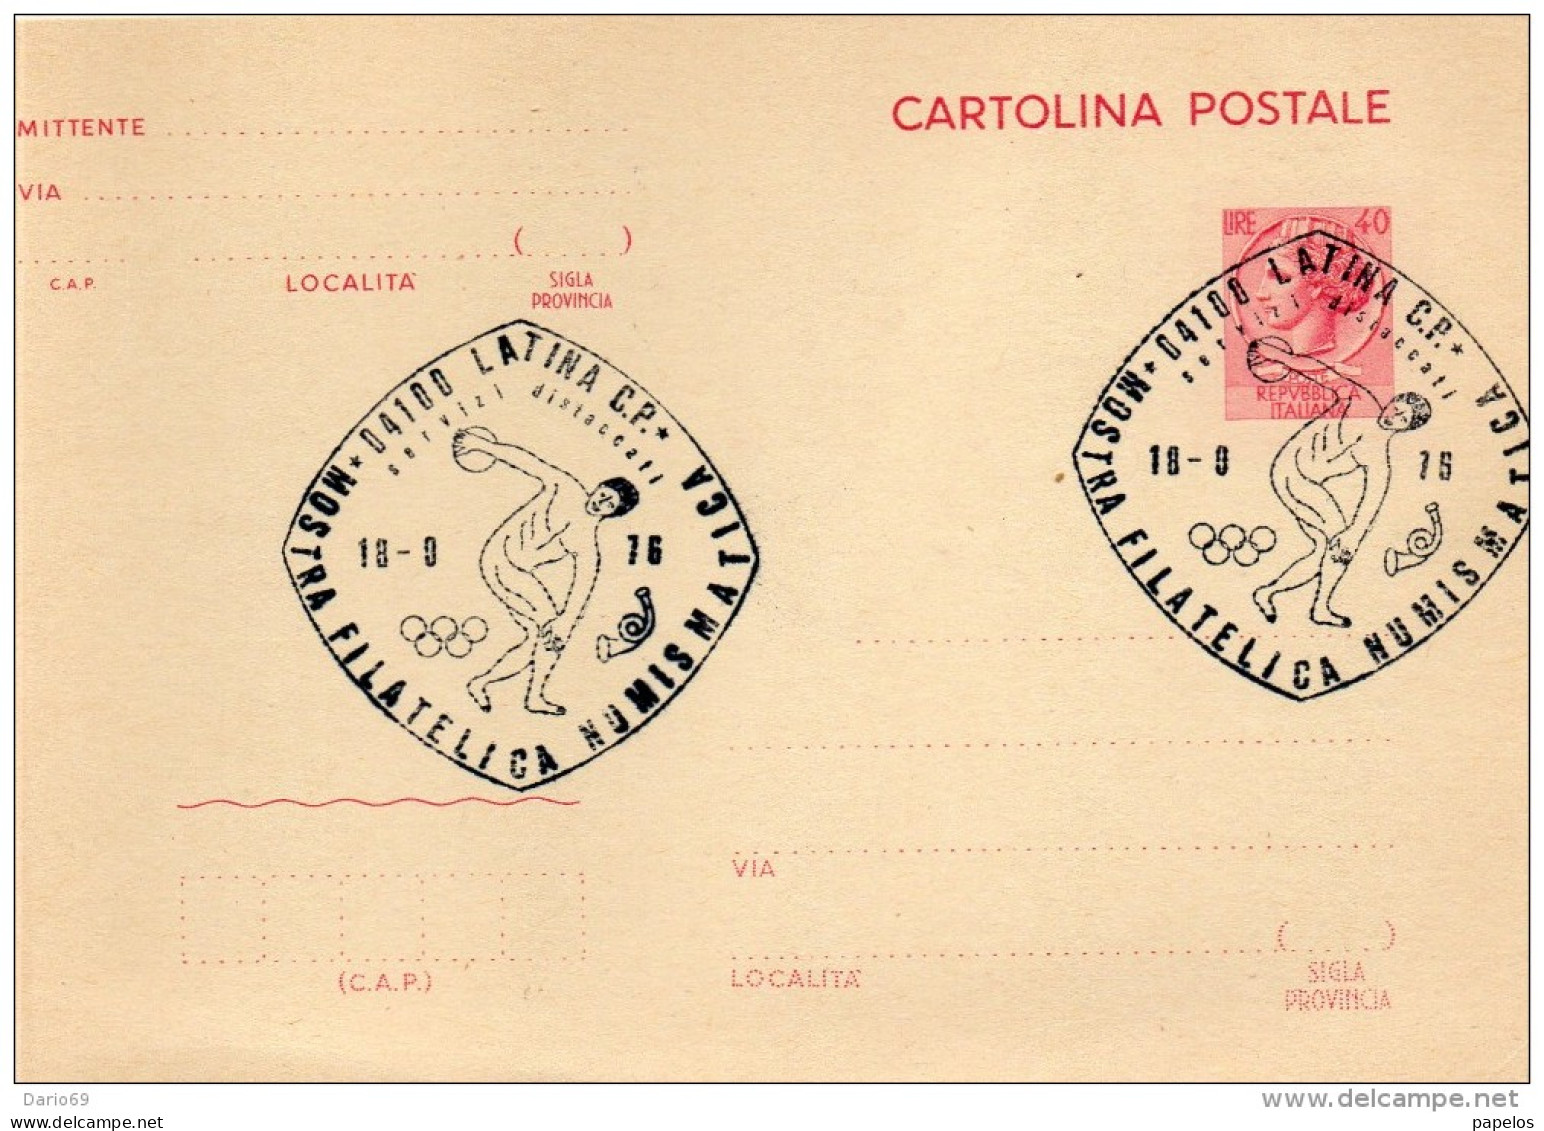 1976 CARTOLINA CON ANNULLO SPECIALE LATINA MOSTRA FILATELICA - Stamped Stationery